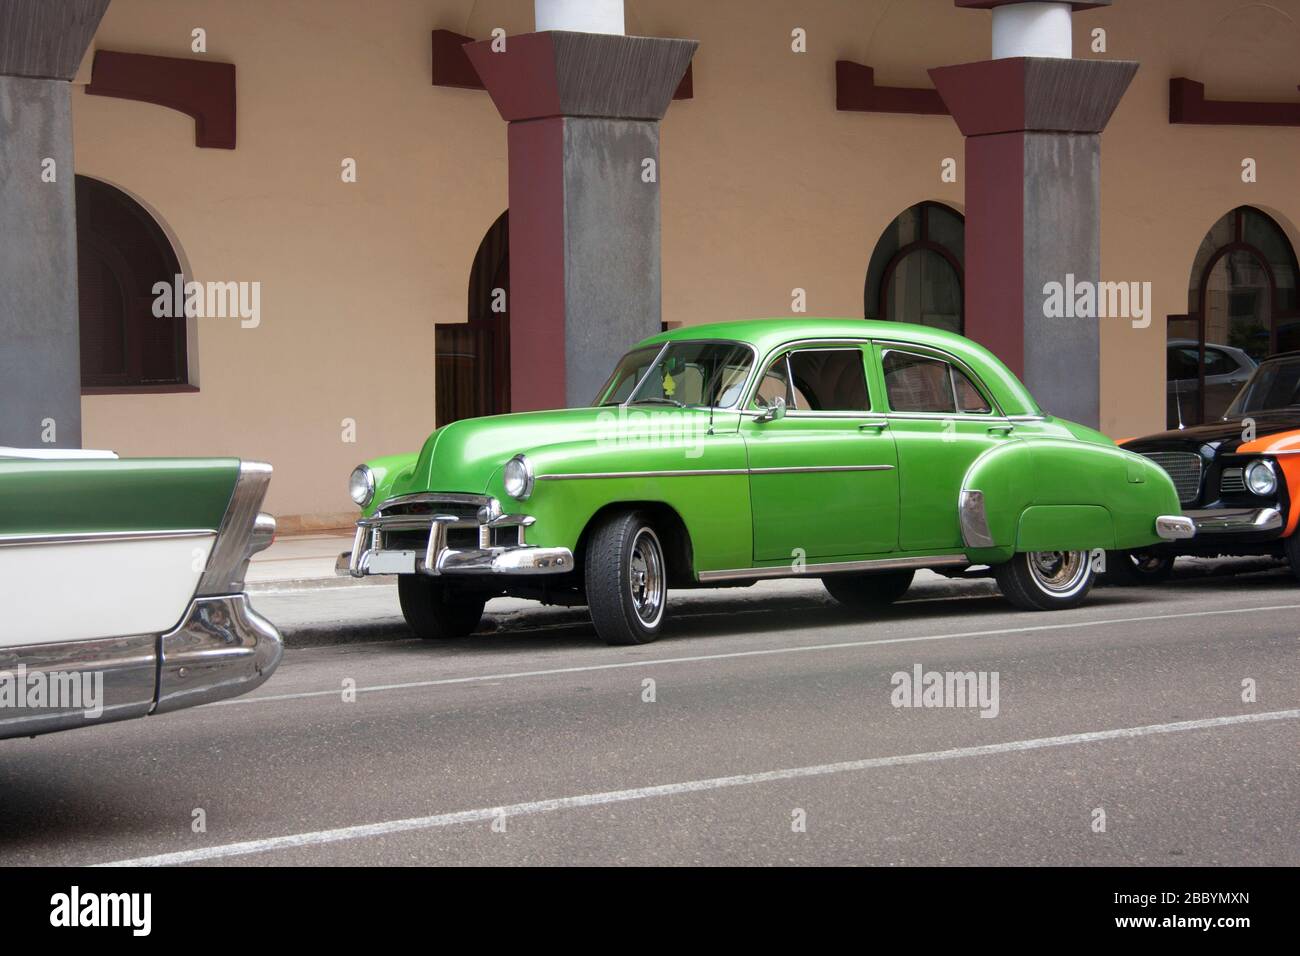 HAVANNA, KUBA - 01. APRIL 2017: Amerikanischer Oldtimer aus den 50er Jahren in grüner Farbe geparkt in der Mittelstraße der Stadt Havanna, Kuba Stockfoto